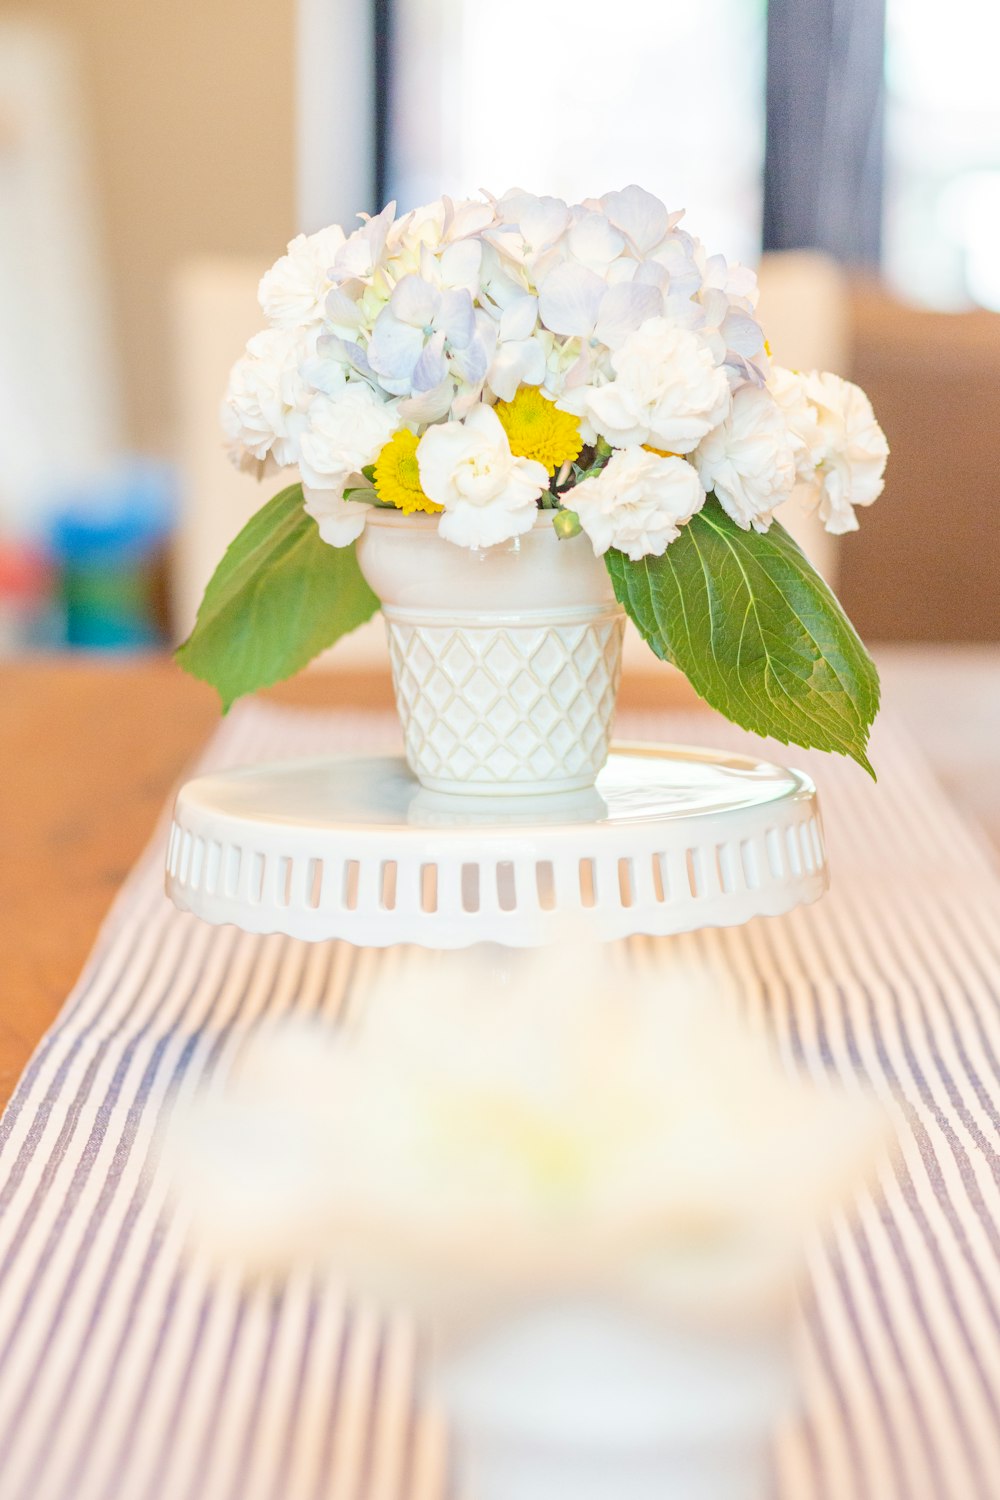 white petaled flower in white vase